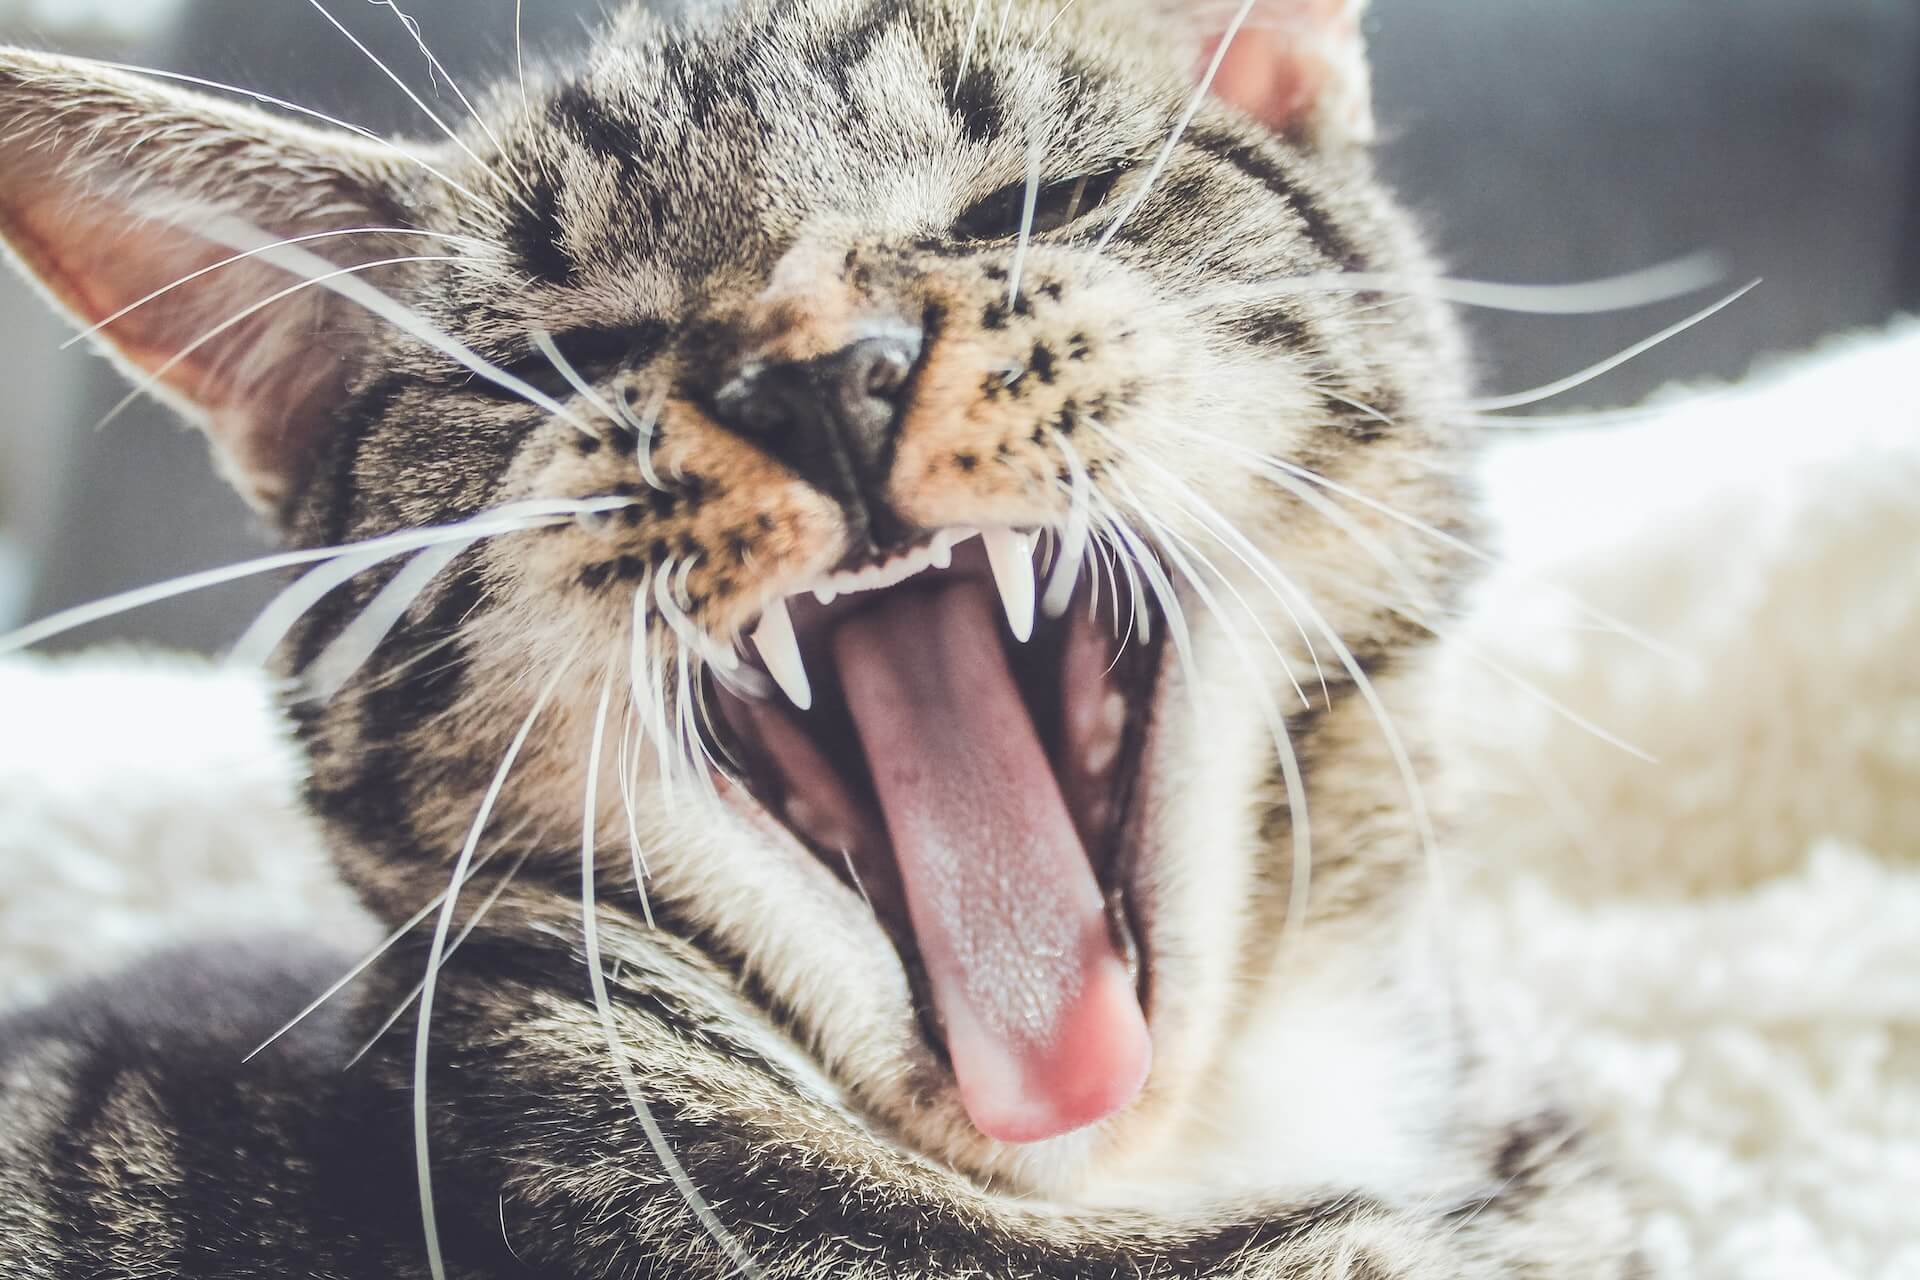 L'hygiène bucco-dentaire du chat : conseils et bonnes pratiques